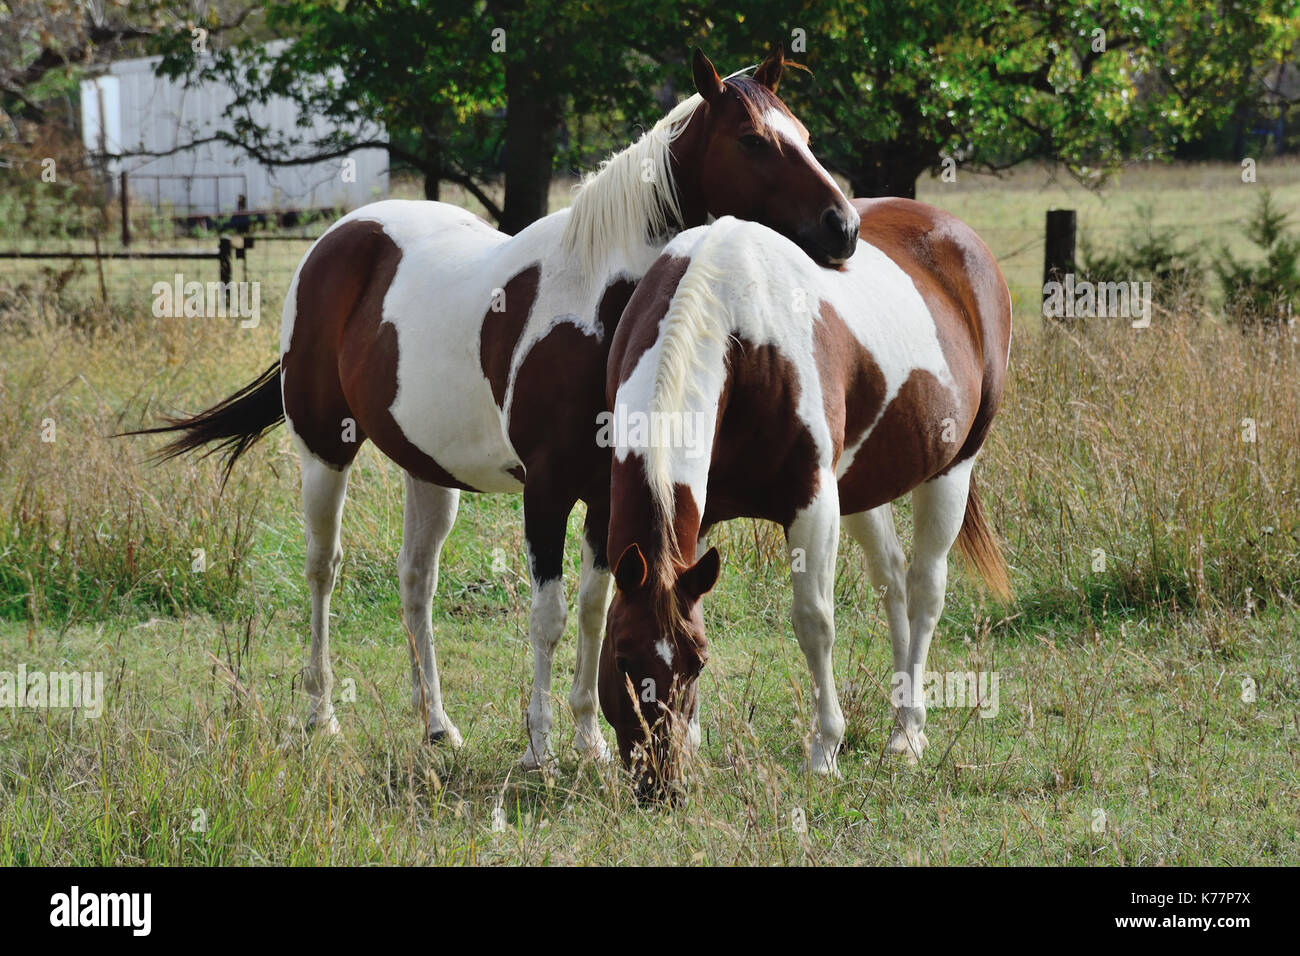 Amazing Horse - Appaloosa Horses 